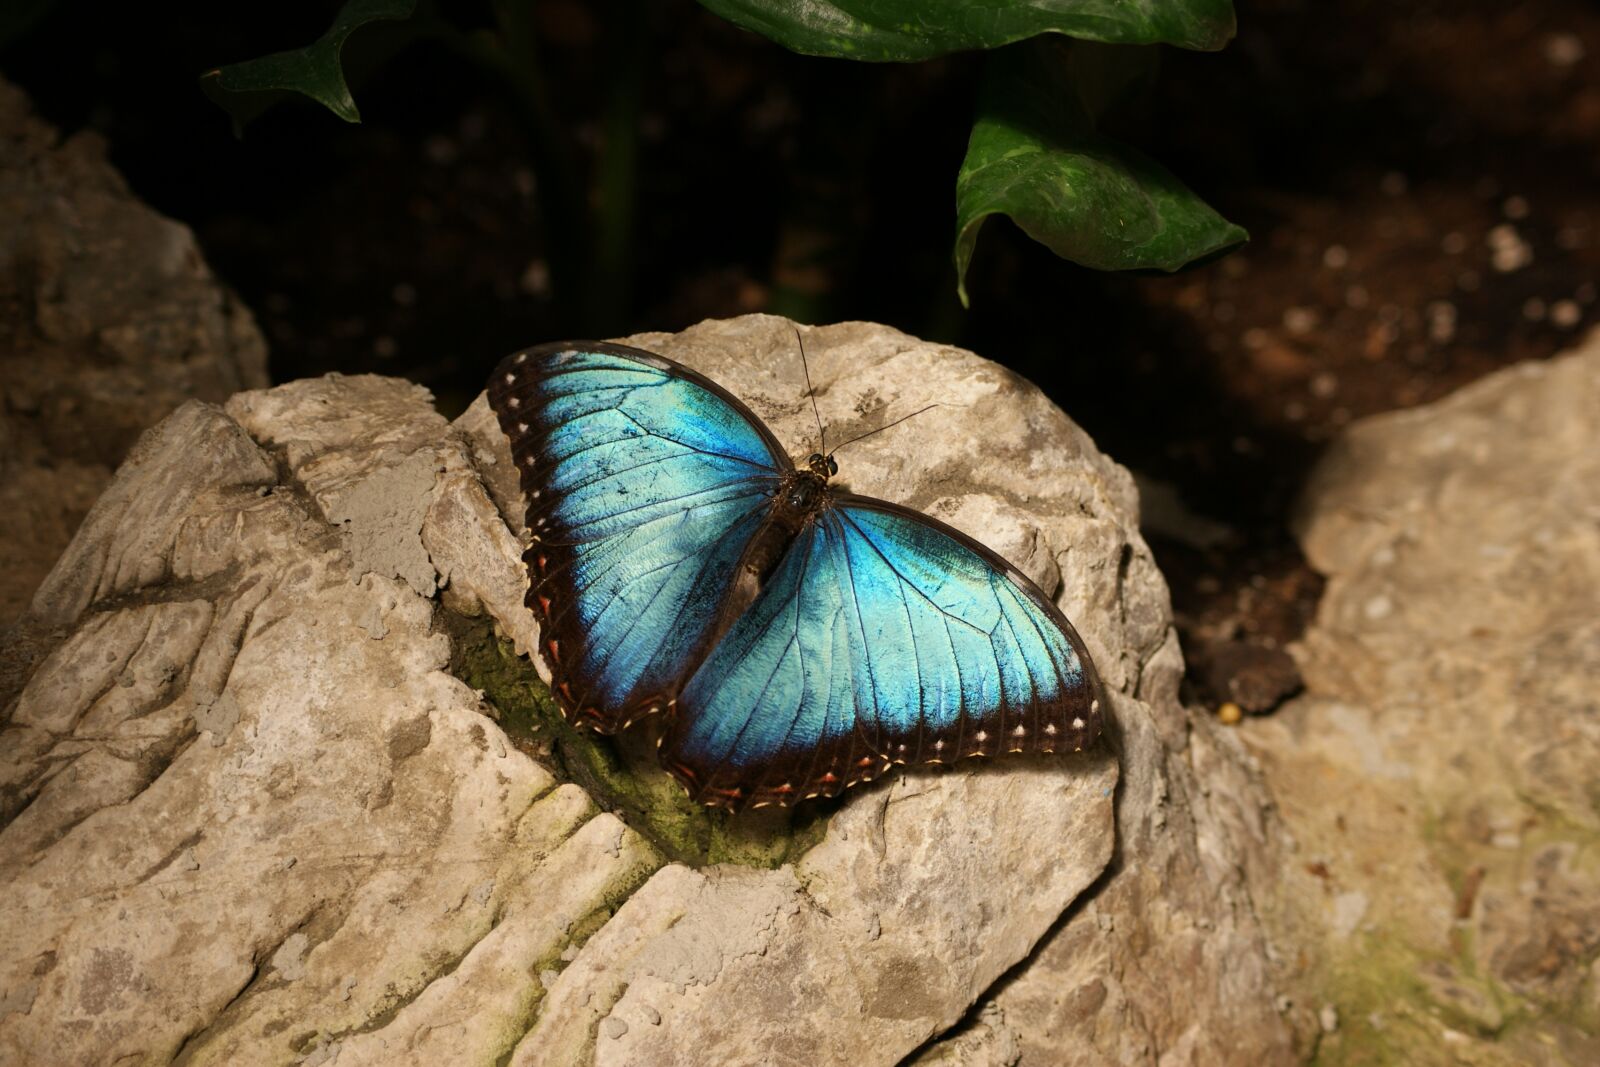 Sony Alpha DSLR-A390 sample photo. Butterfly, blue, morpho photography